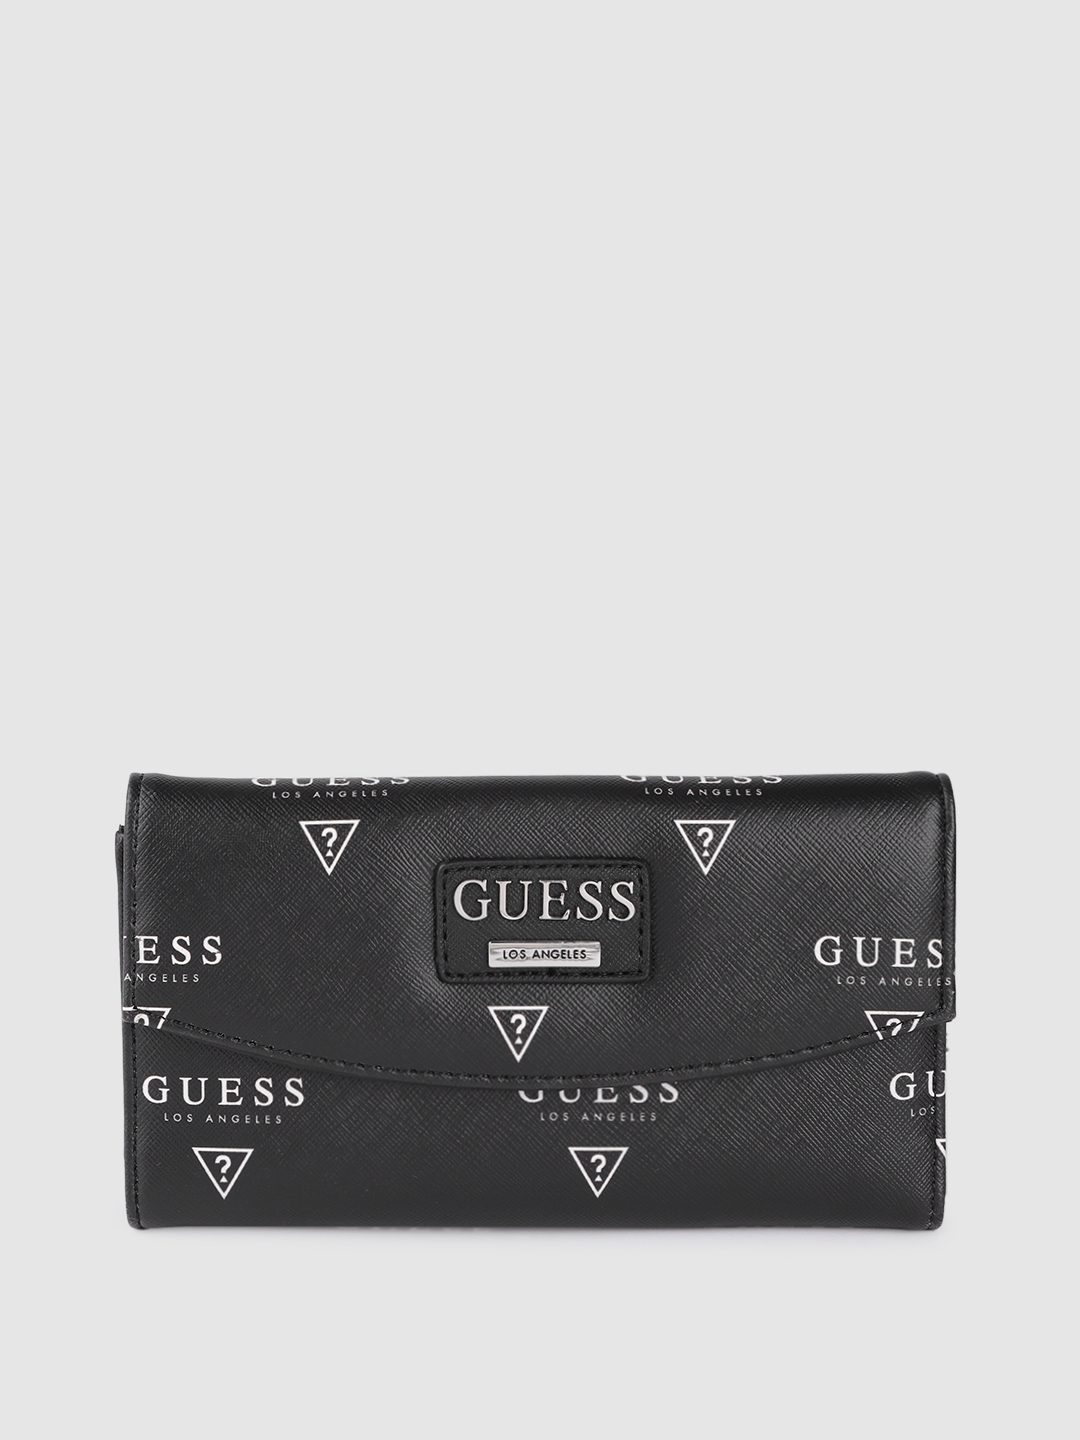 Buy GUESS Women Black & White Brand Logo Print Three Fold Wallet ...